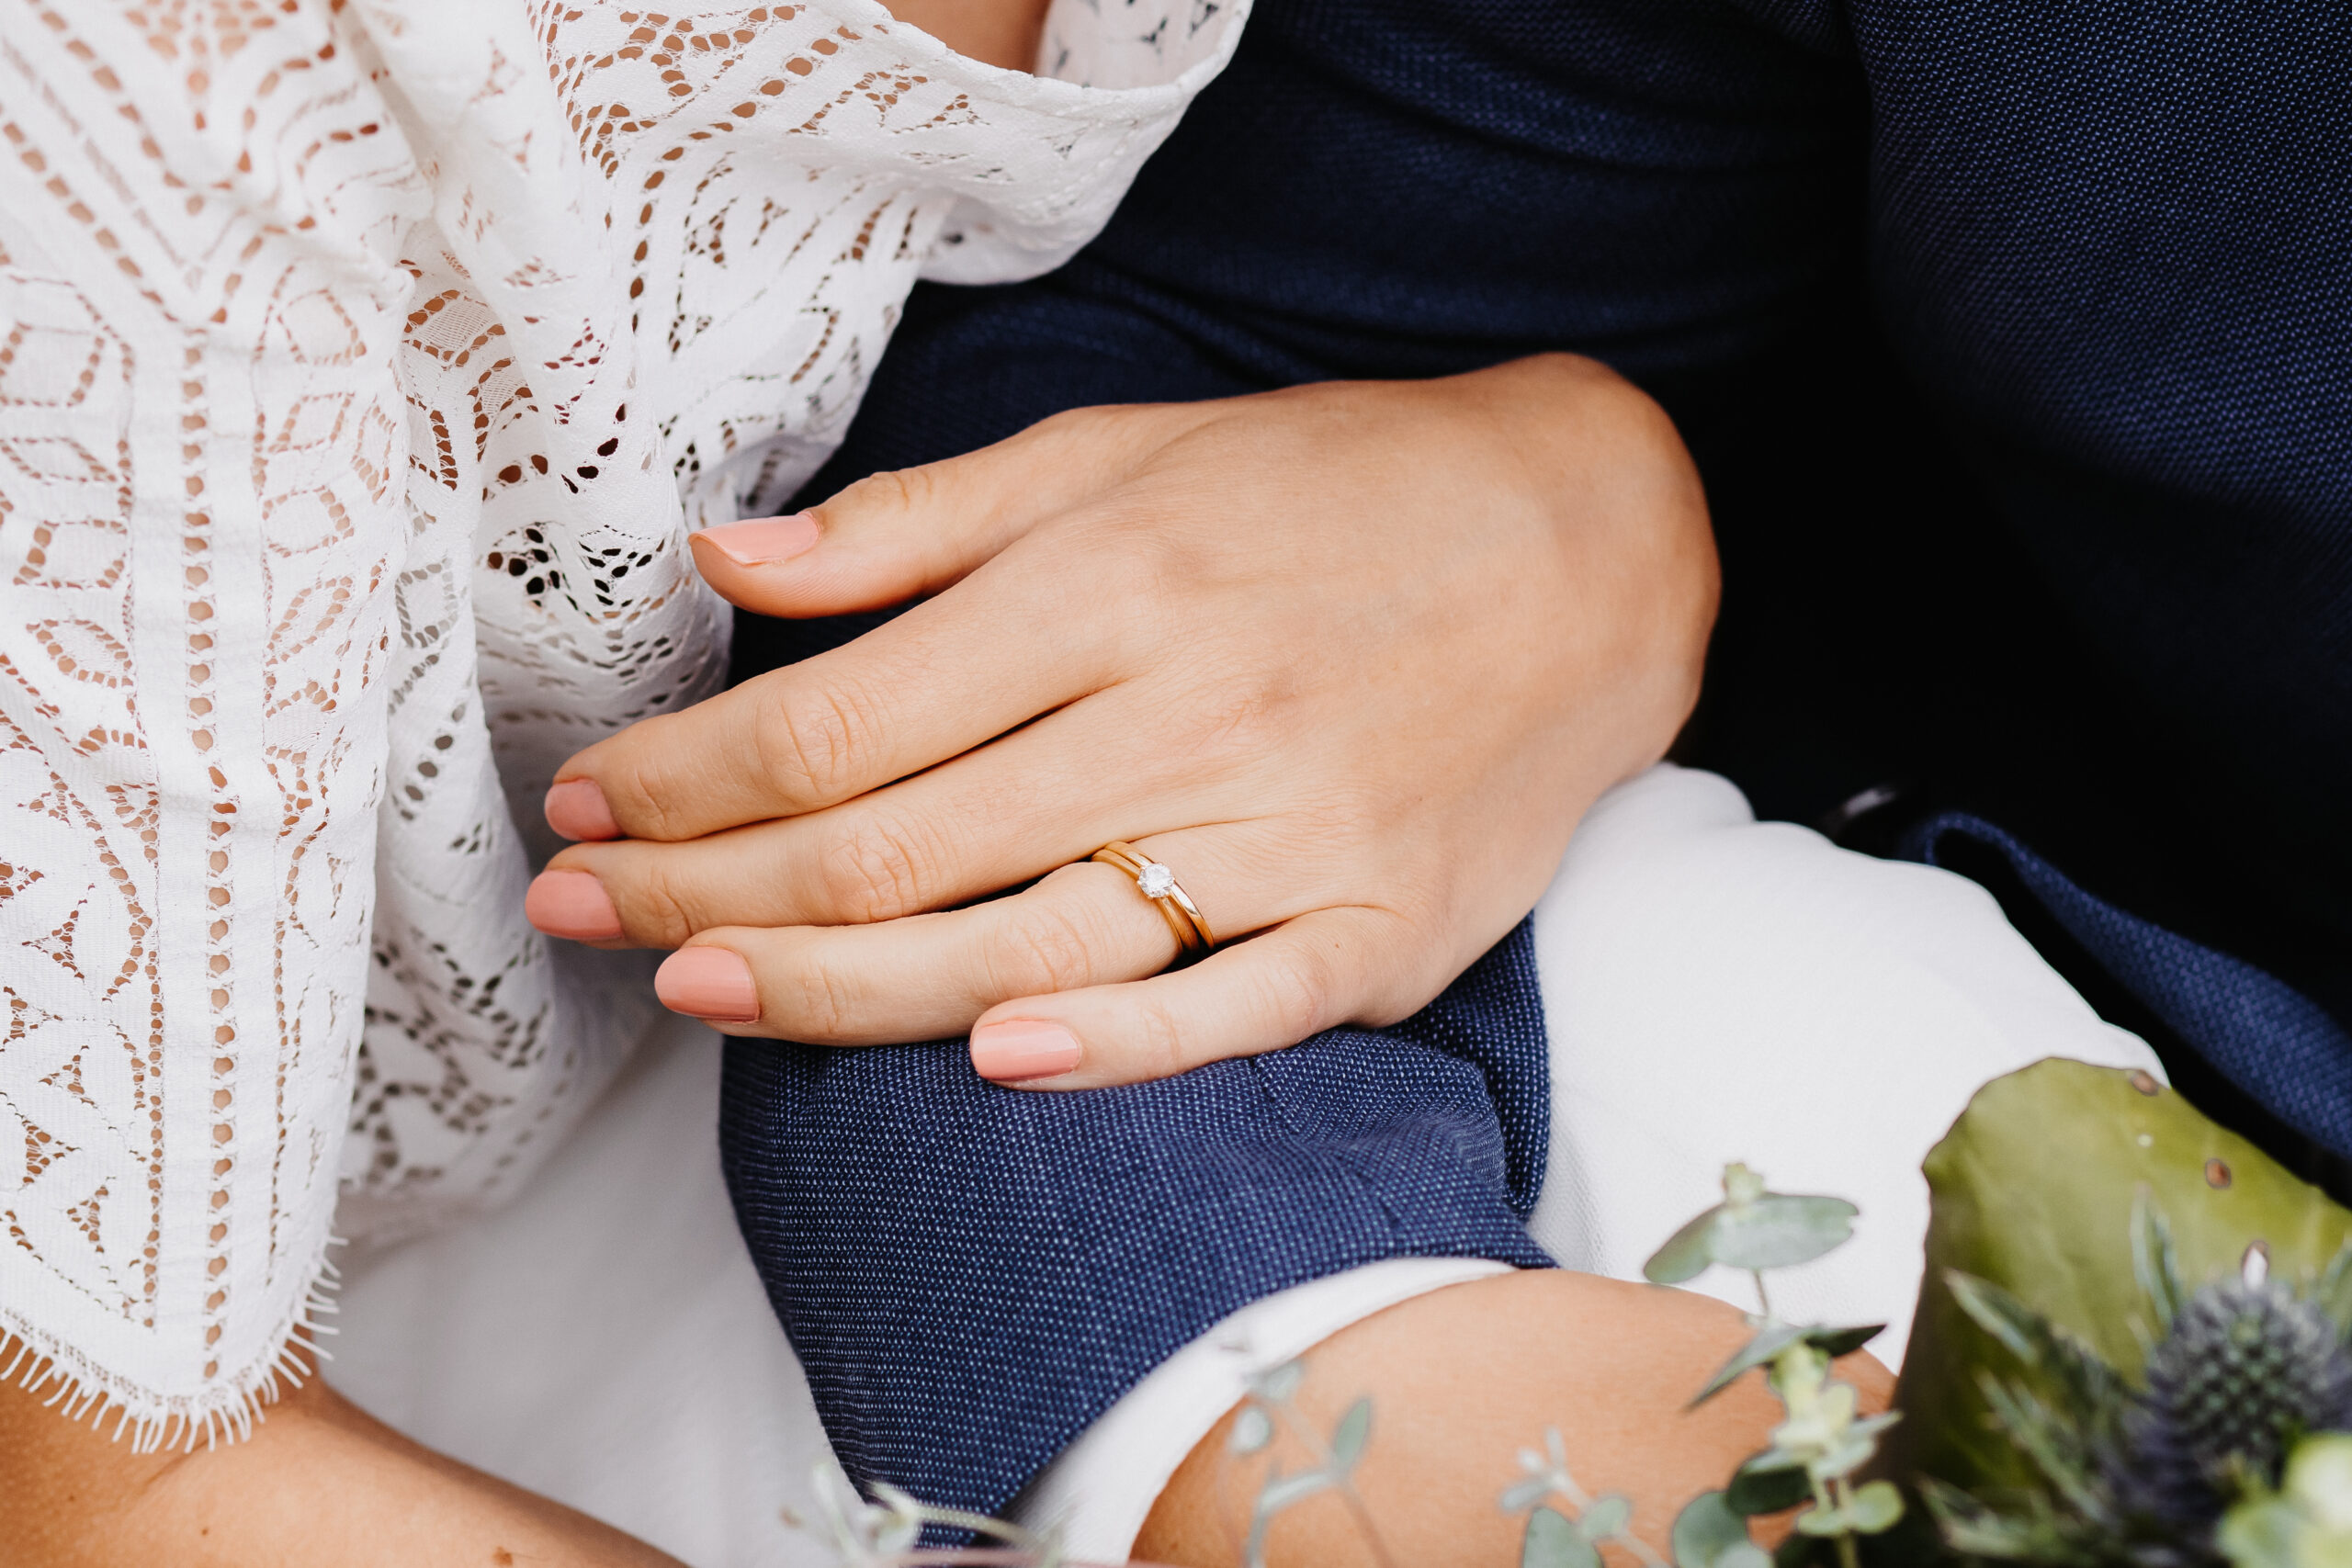 Brautpaar hält sich während dem Brautpaarshooting sitzend die Hand und es ist eine Detailaufnahme der Hände wie die Braut sich bei ihrem Mann einhakt mit der Hand wo auch der Ehering und Verlobungsring zu sehen ist. Der Bräutigam trägt einen blauen Anzug und sie ein weißes Hochzeitskleid.